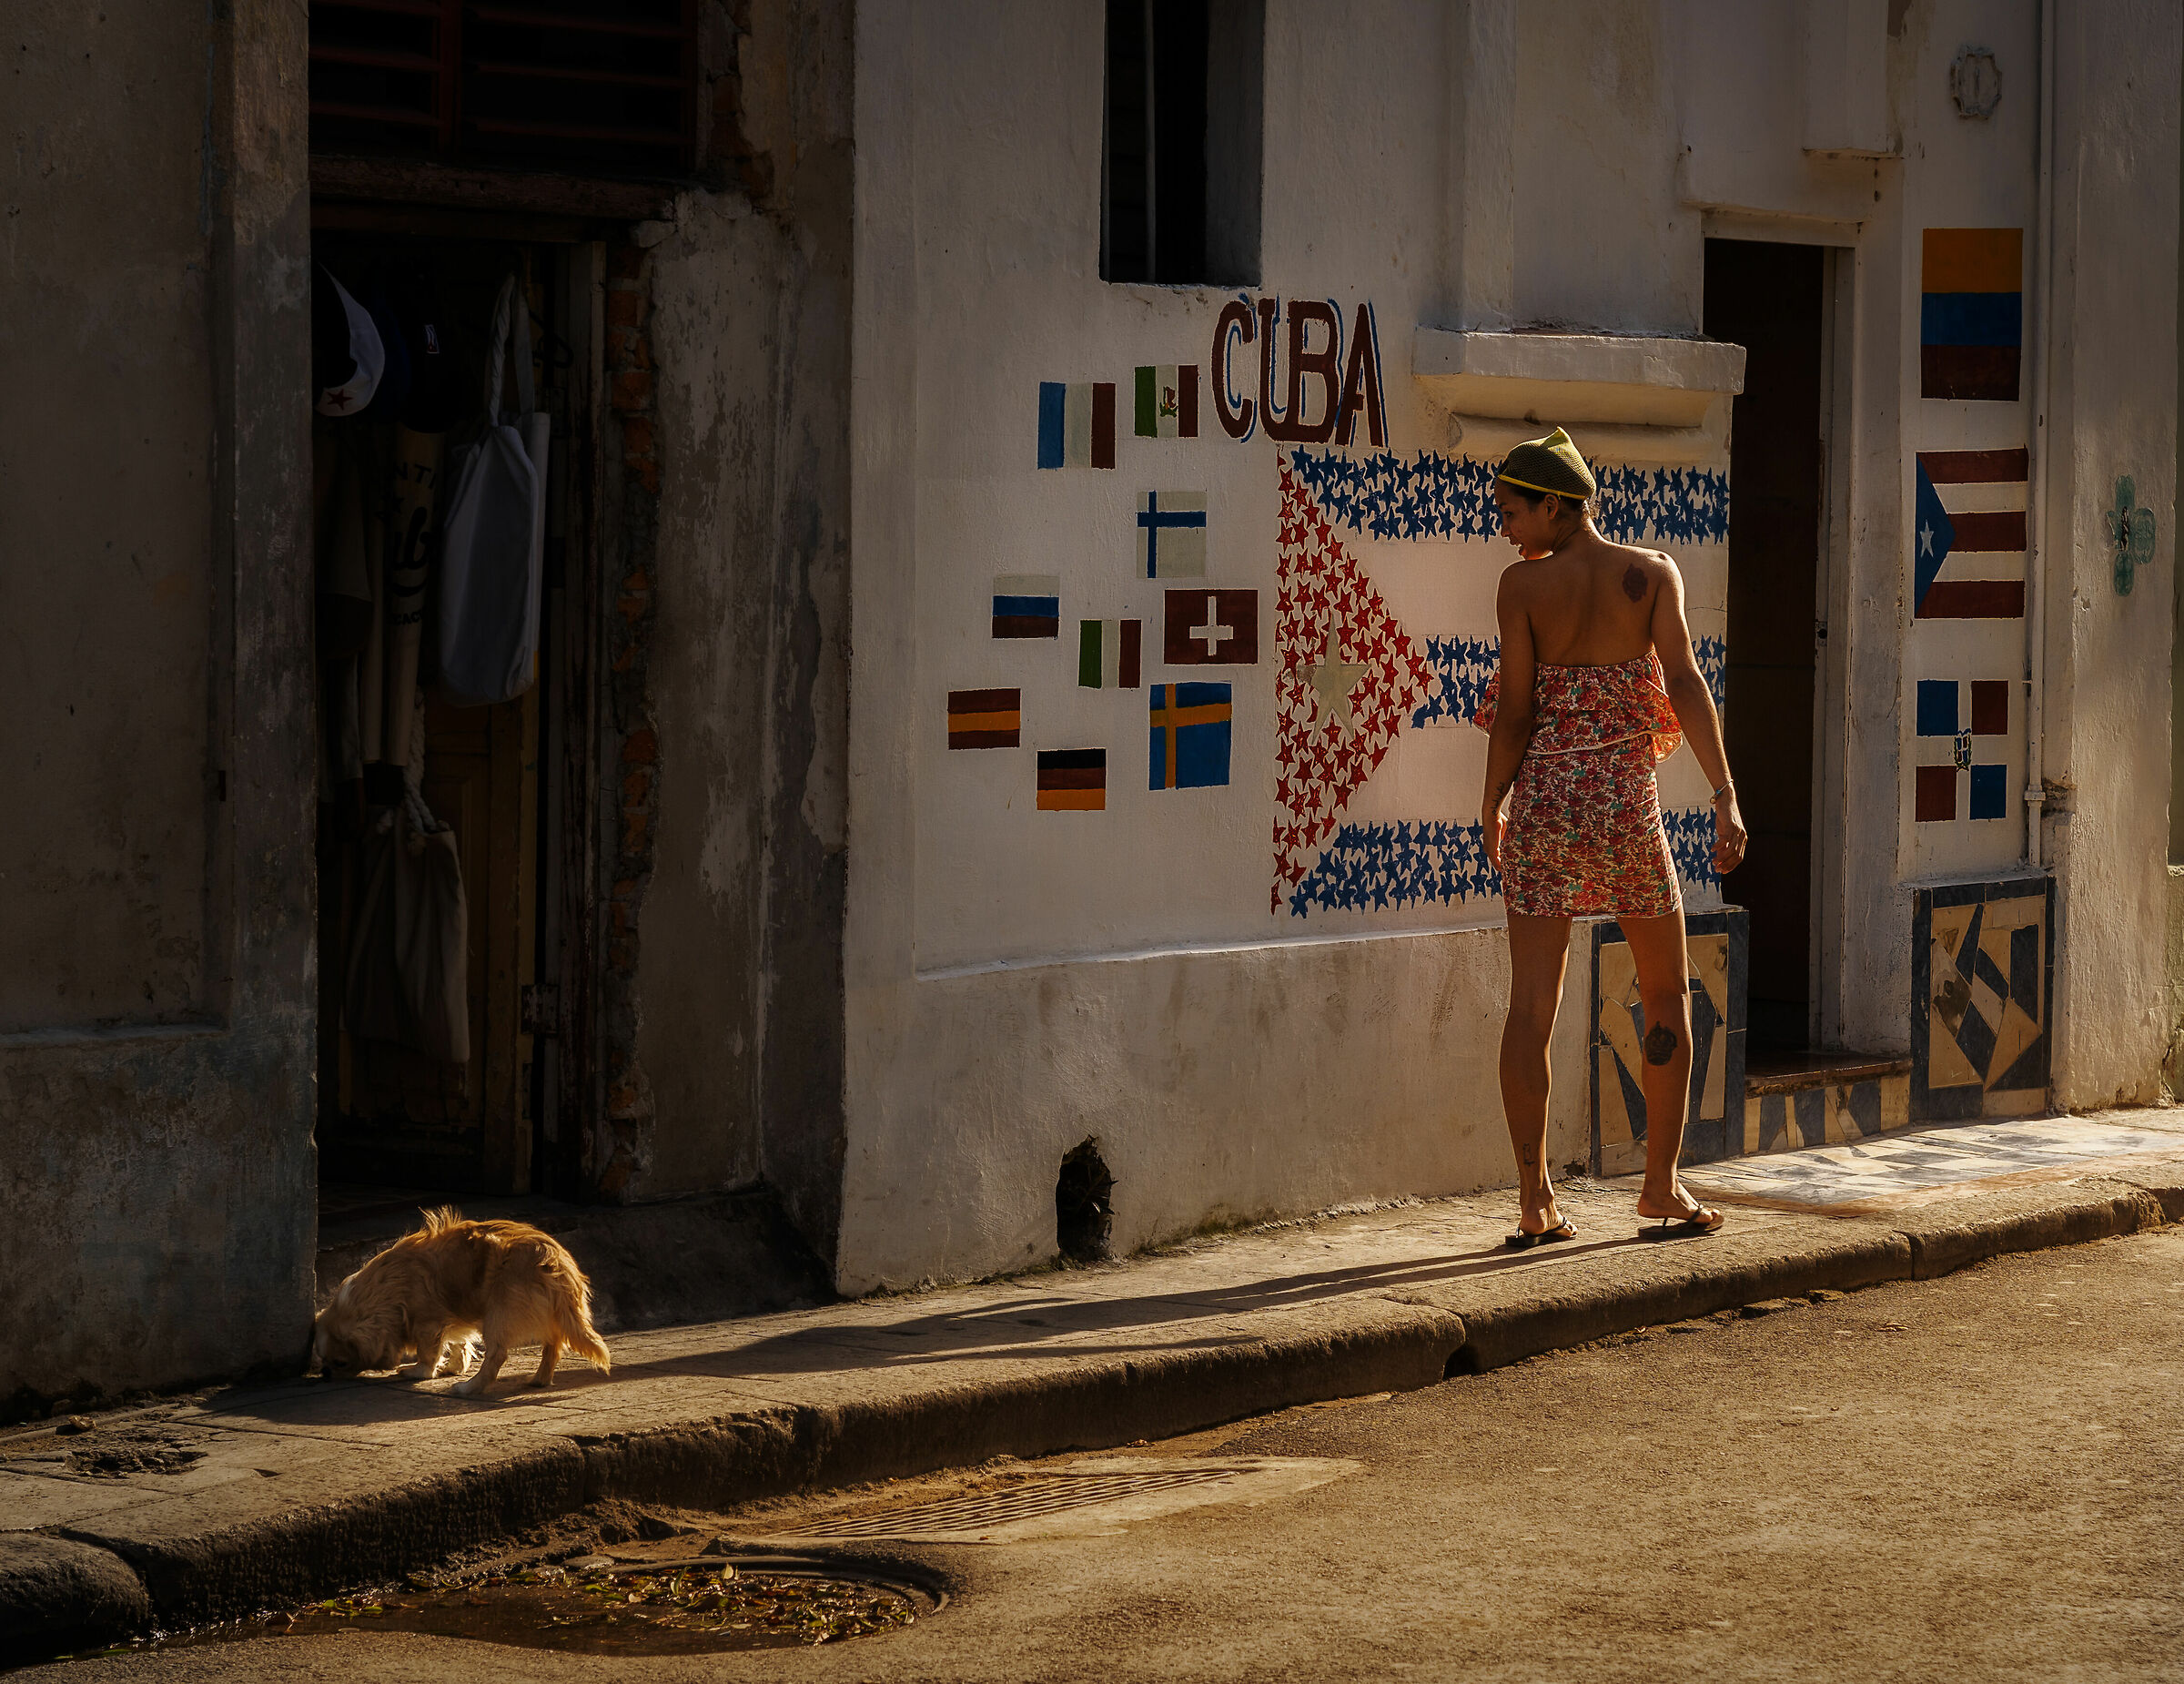 Streets of Havana...